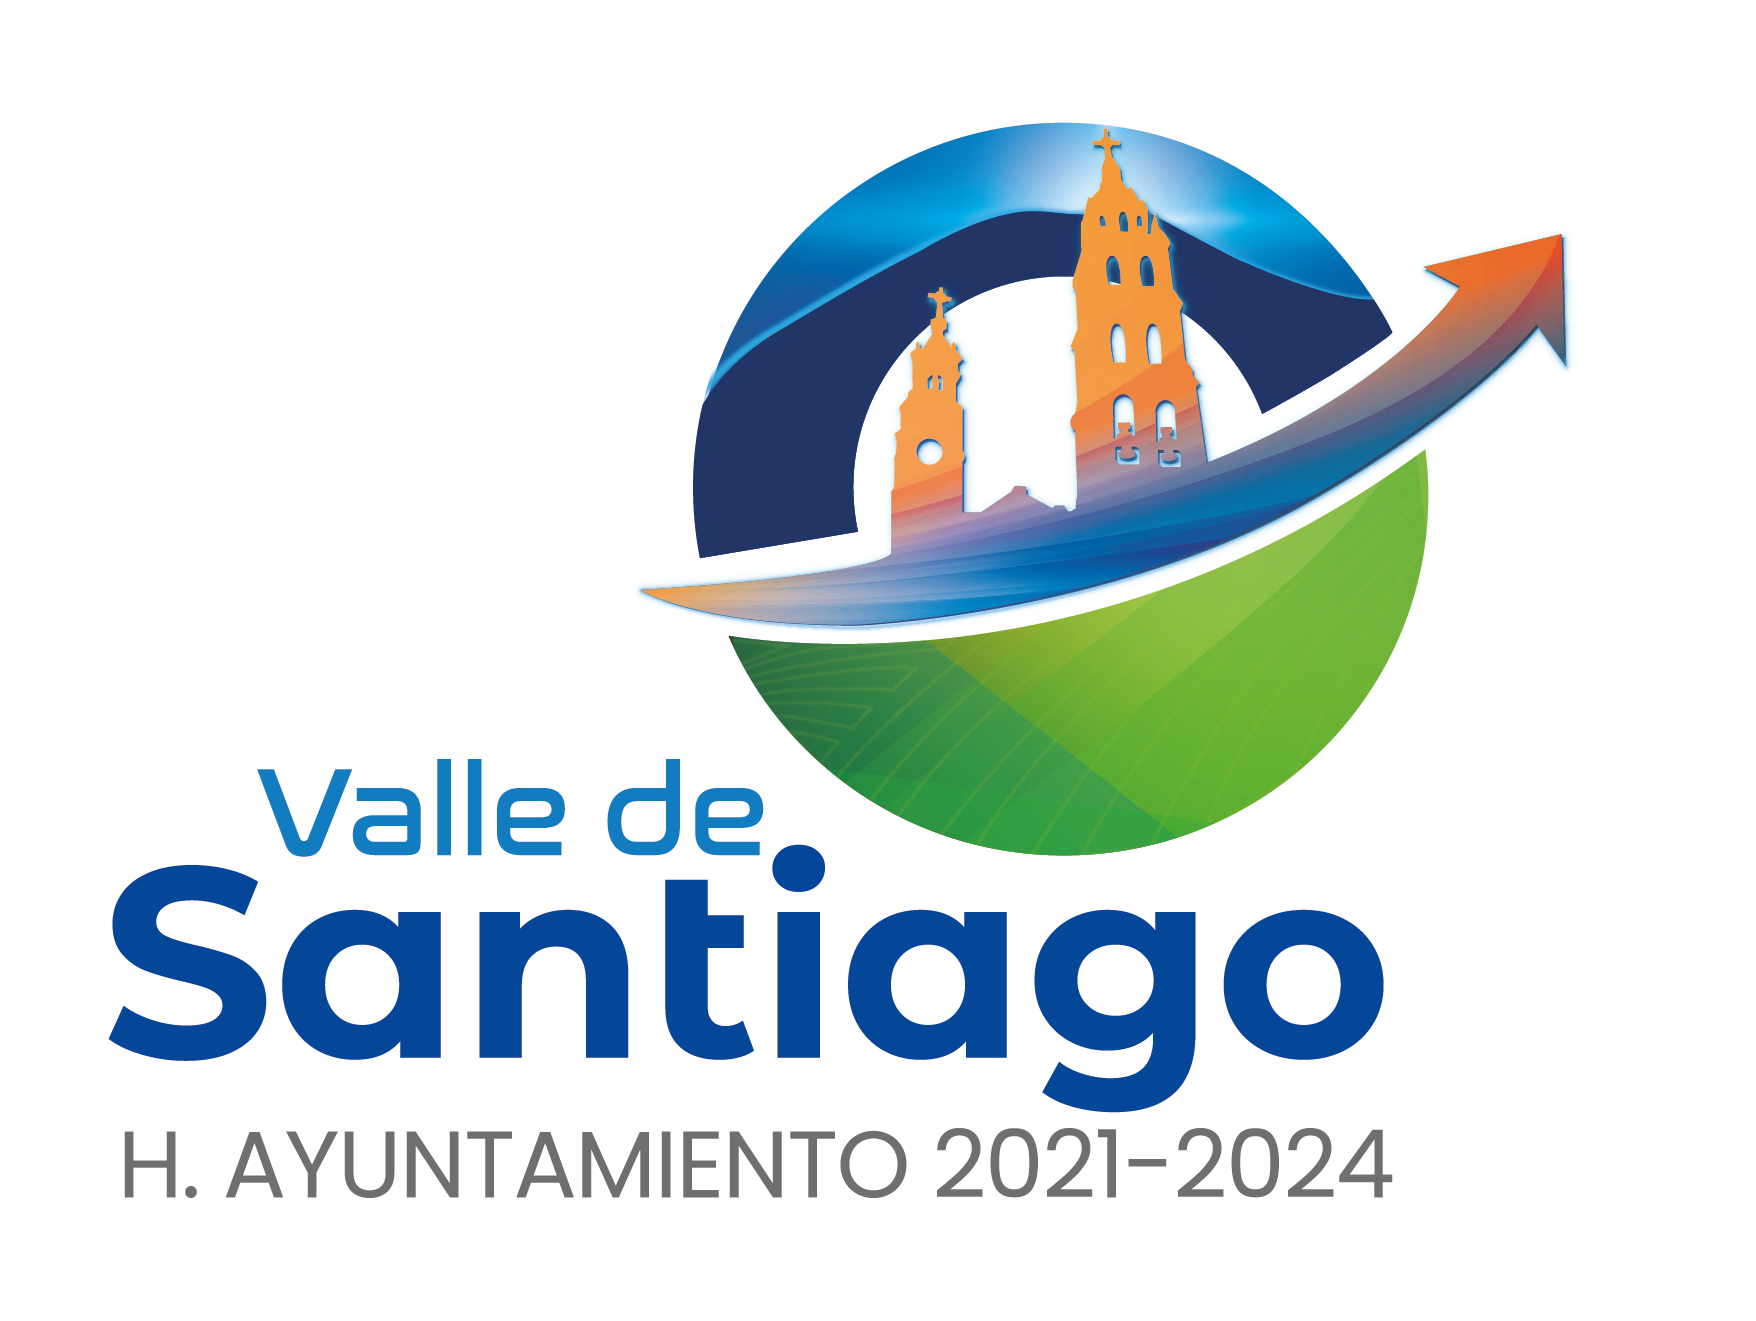 H. Ayuntamiento Valle de Santiago